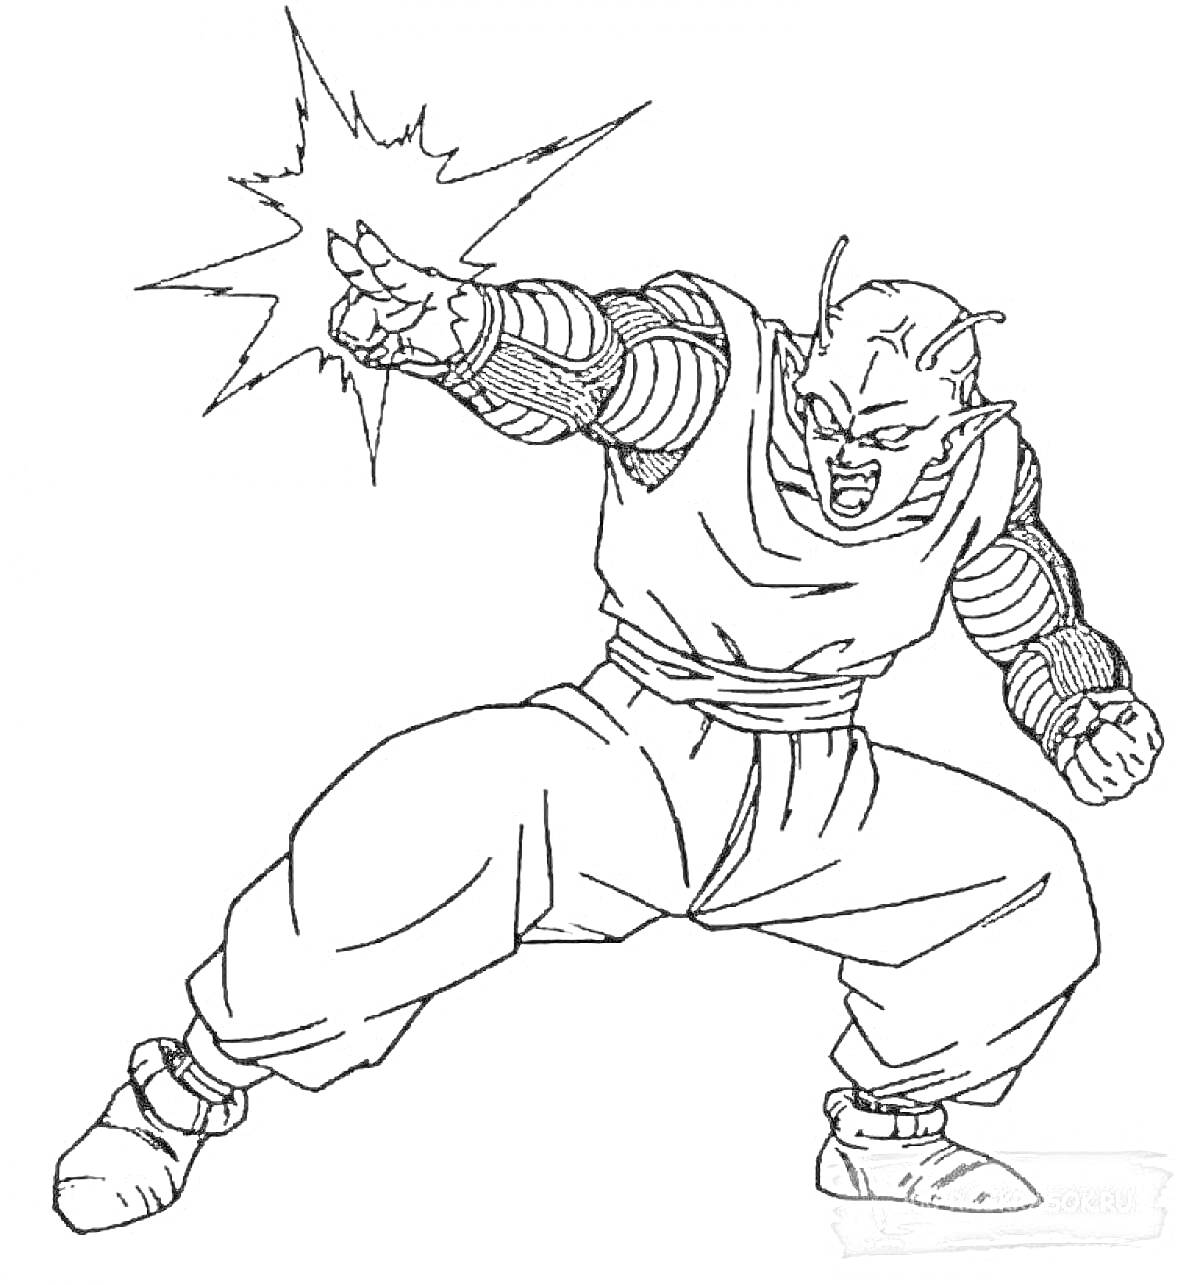 Раскраска Герой Гуджитсу в боевой позе со взрывом энергии из пальцев